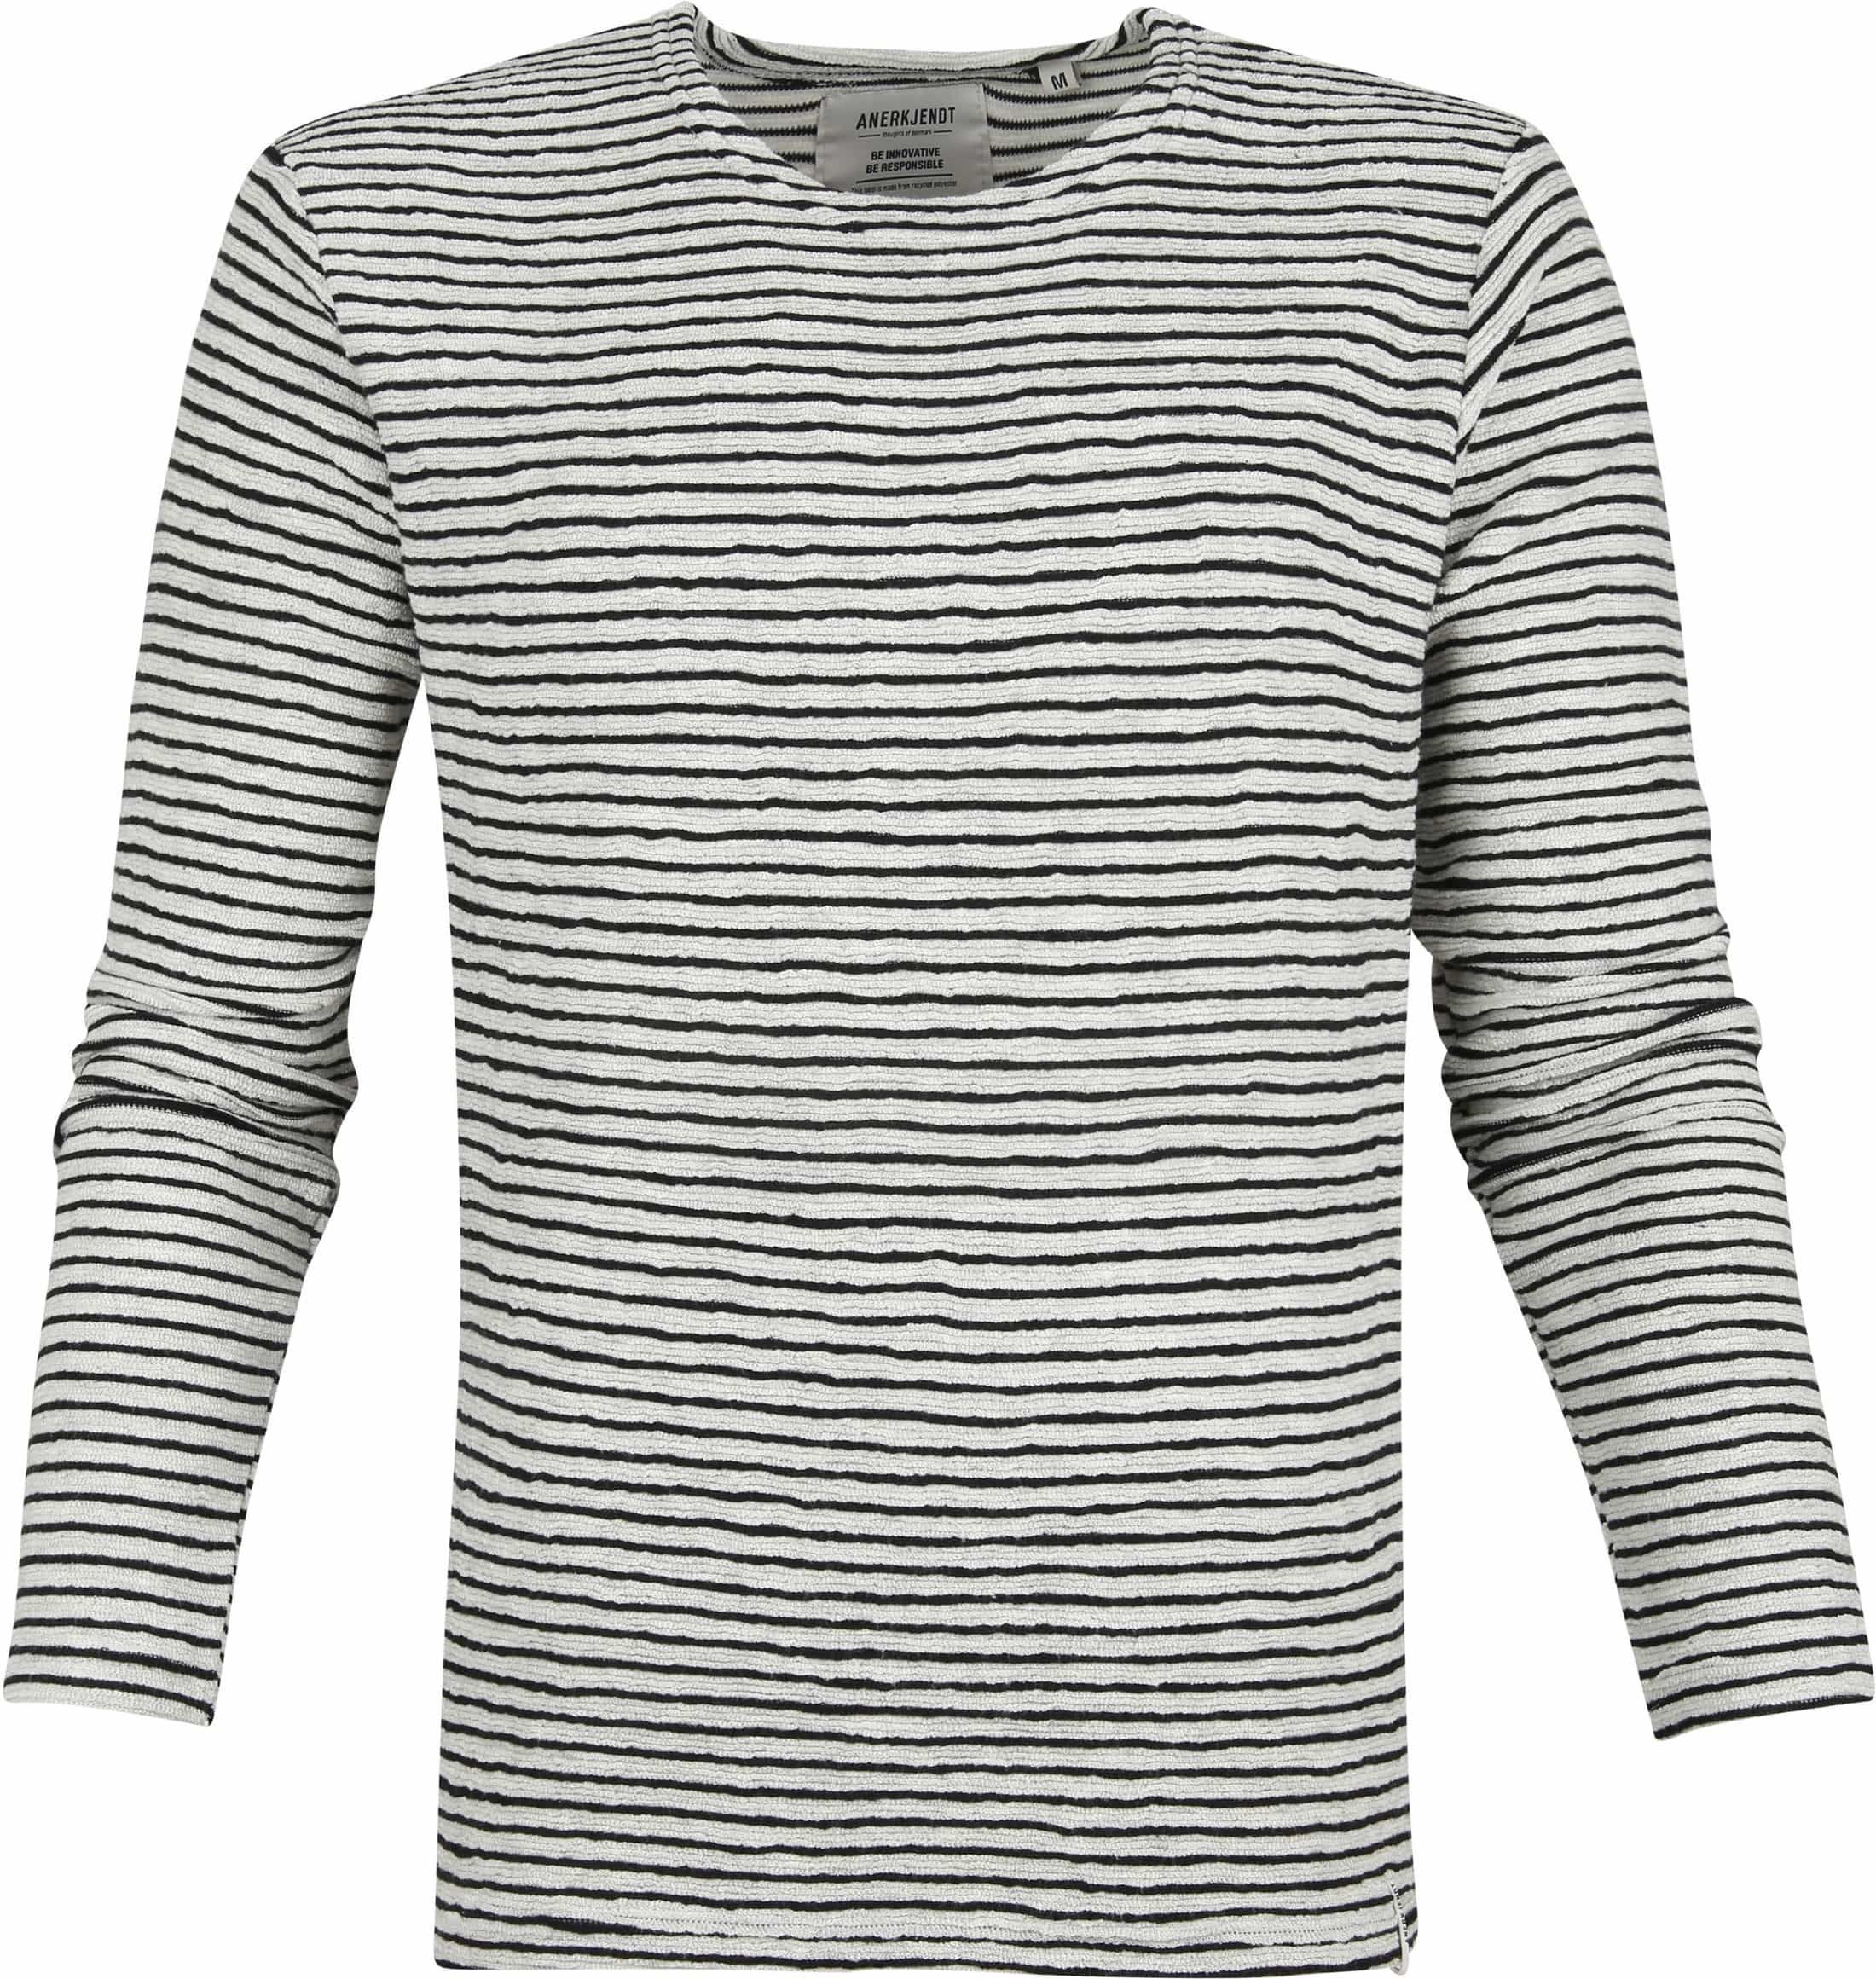 Anerkjendt Aksolar Sweater Light Grey size S